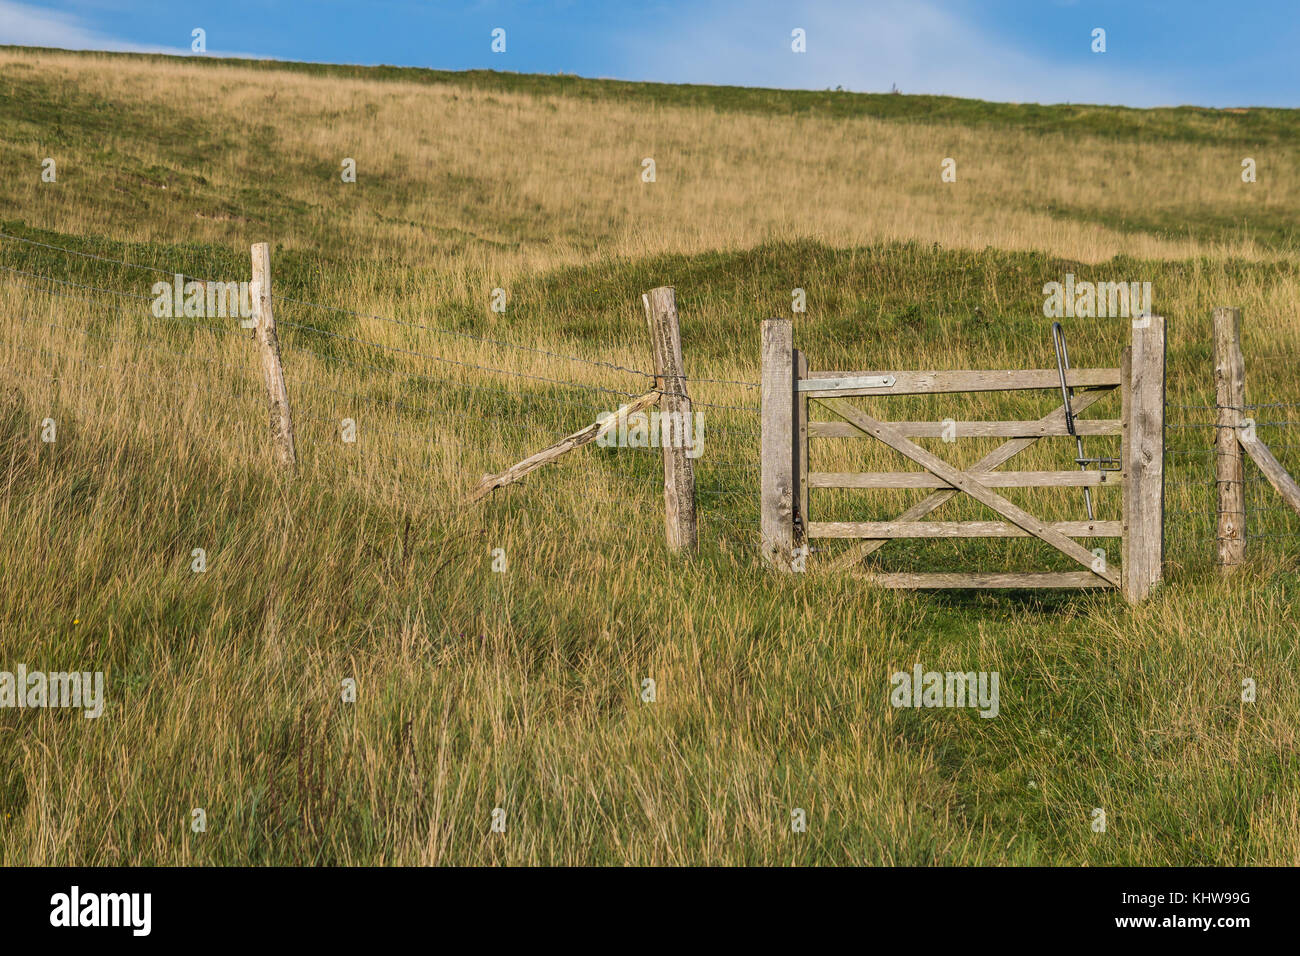 Une porte en bois s'ouvrant sur un sentier public et un champ ouvert dans la campagne anglaise. Prise près de la mer dans les South Downs. Soleil d'été, pas de personnes. Banque D'Images